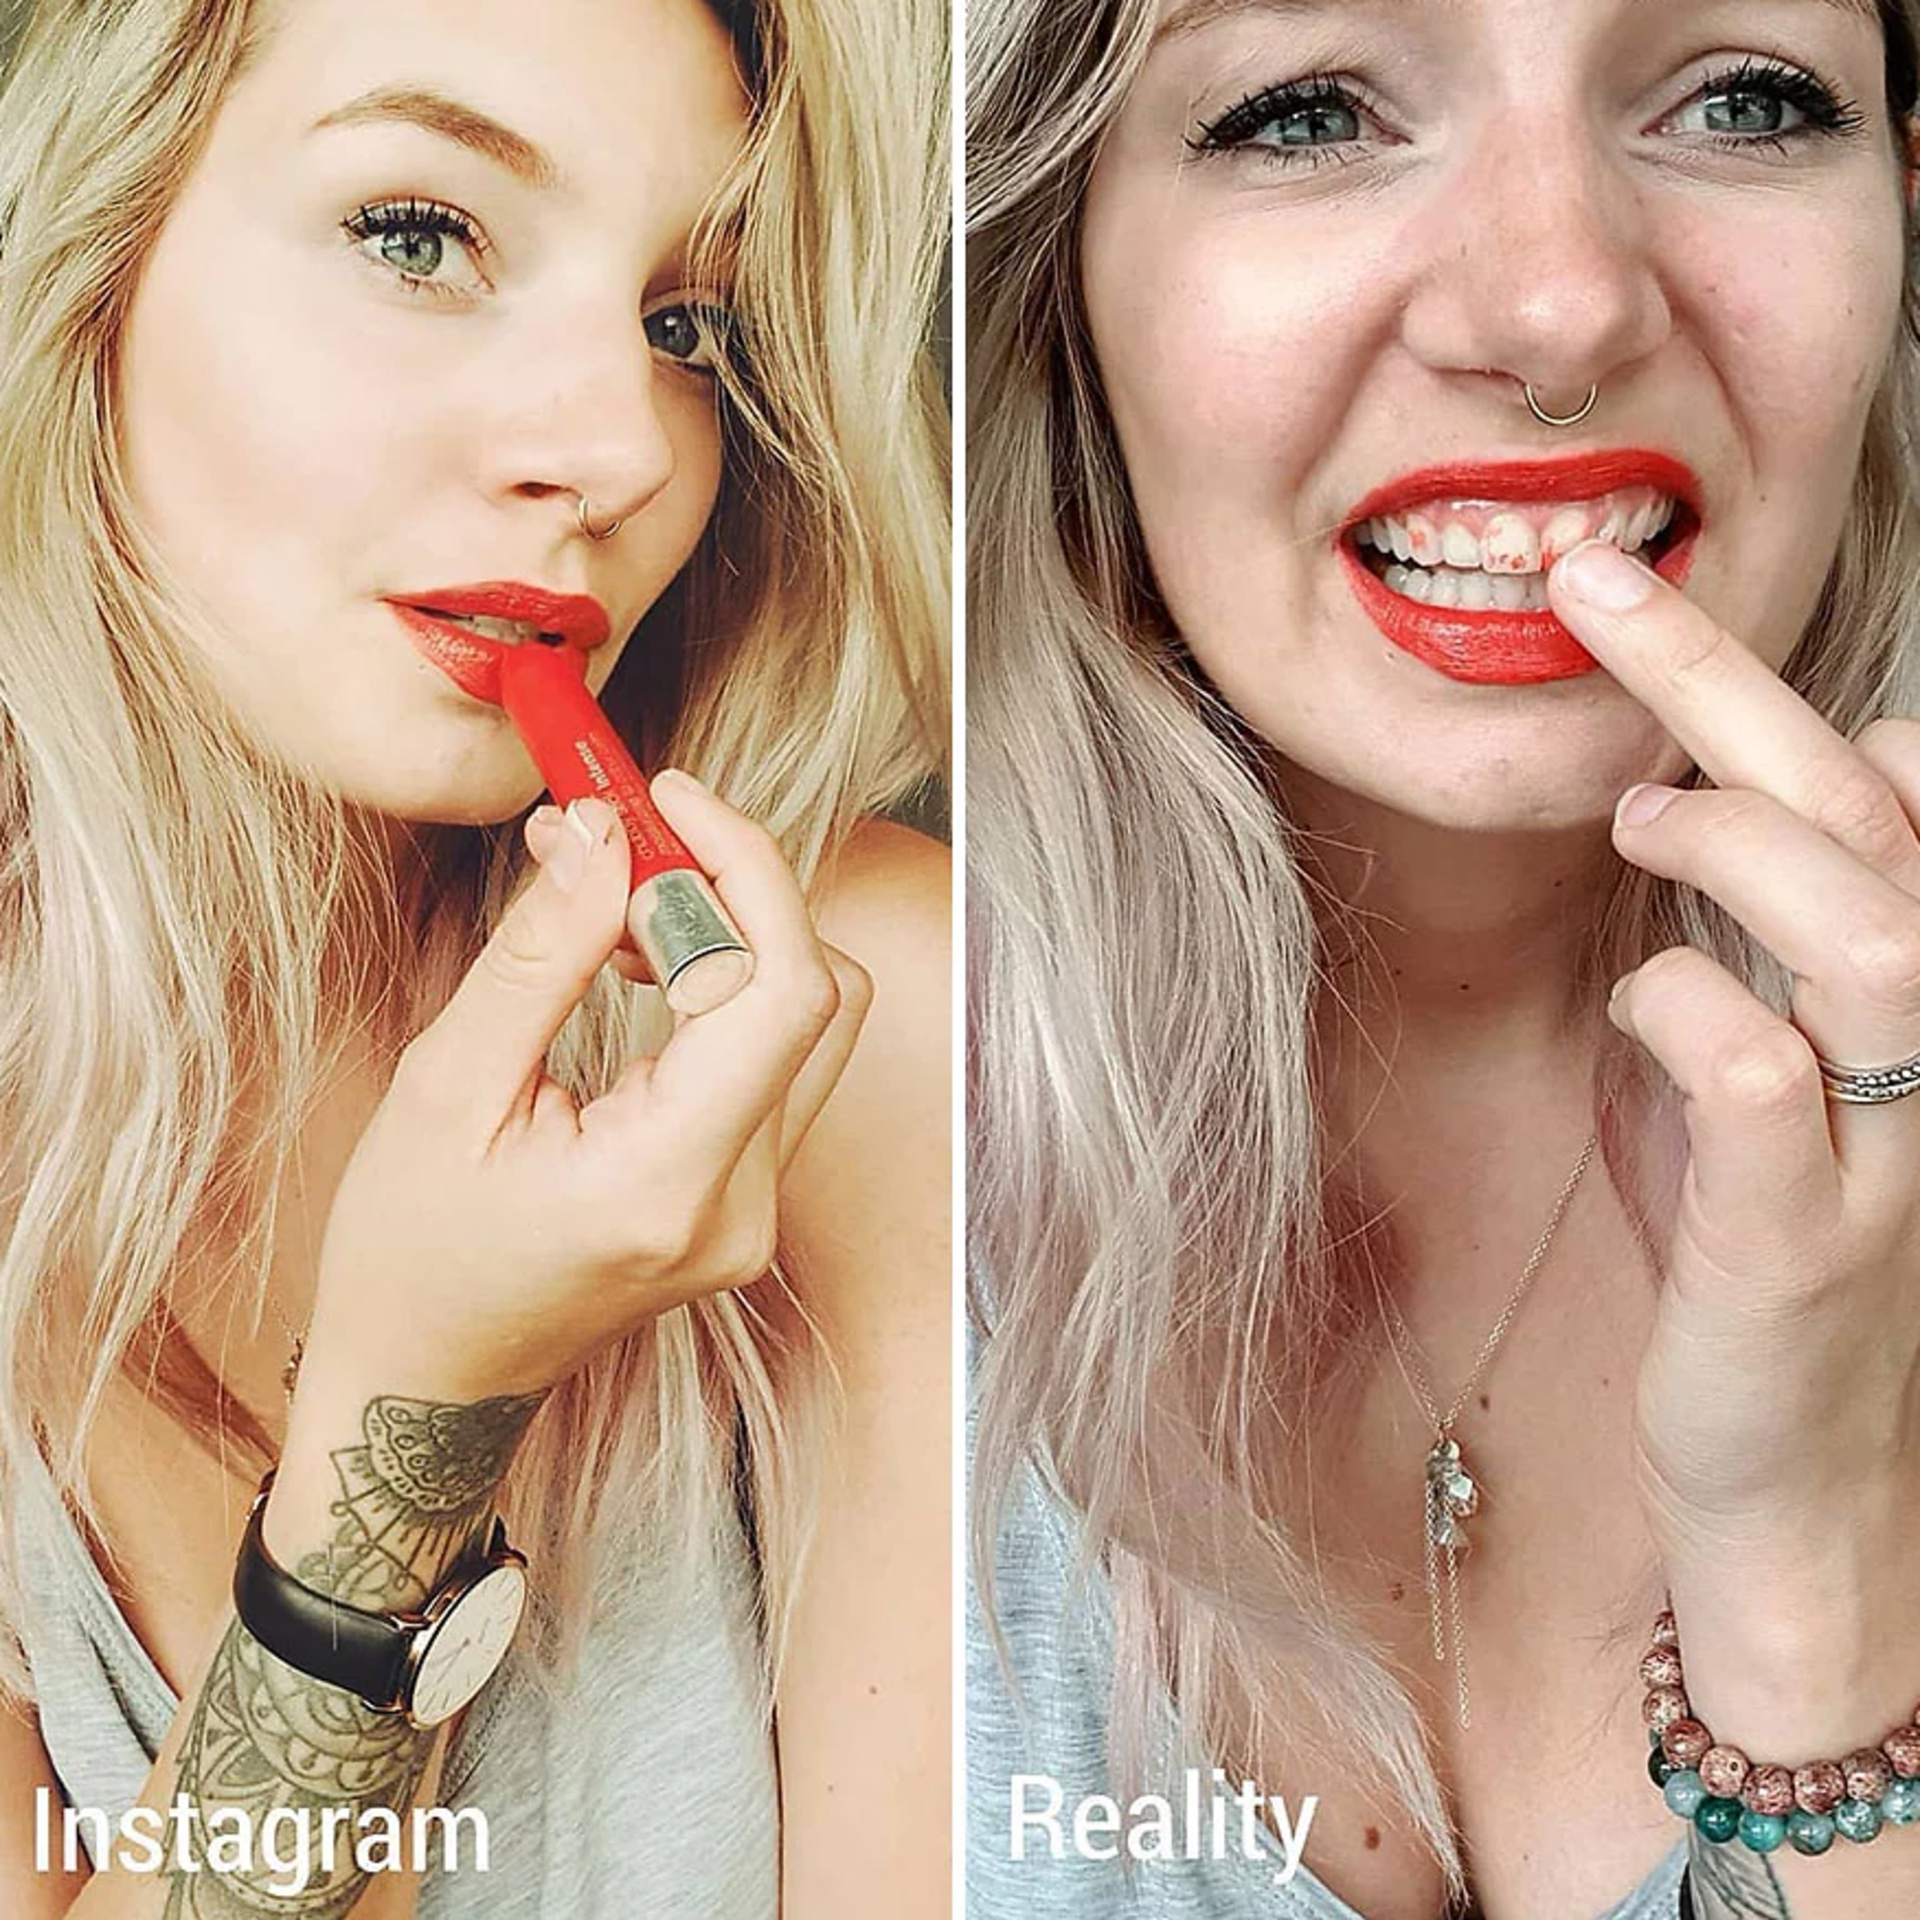 Žena ukazuje rozdíl mezi fotkami na Instagramu a realitou 12